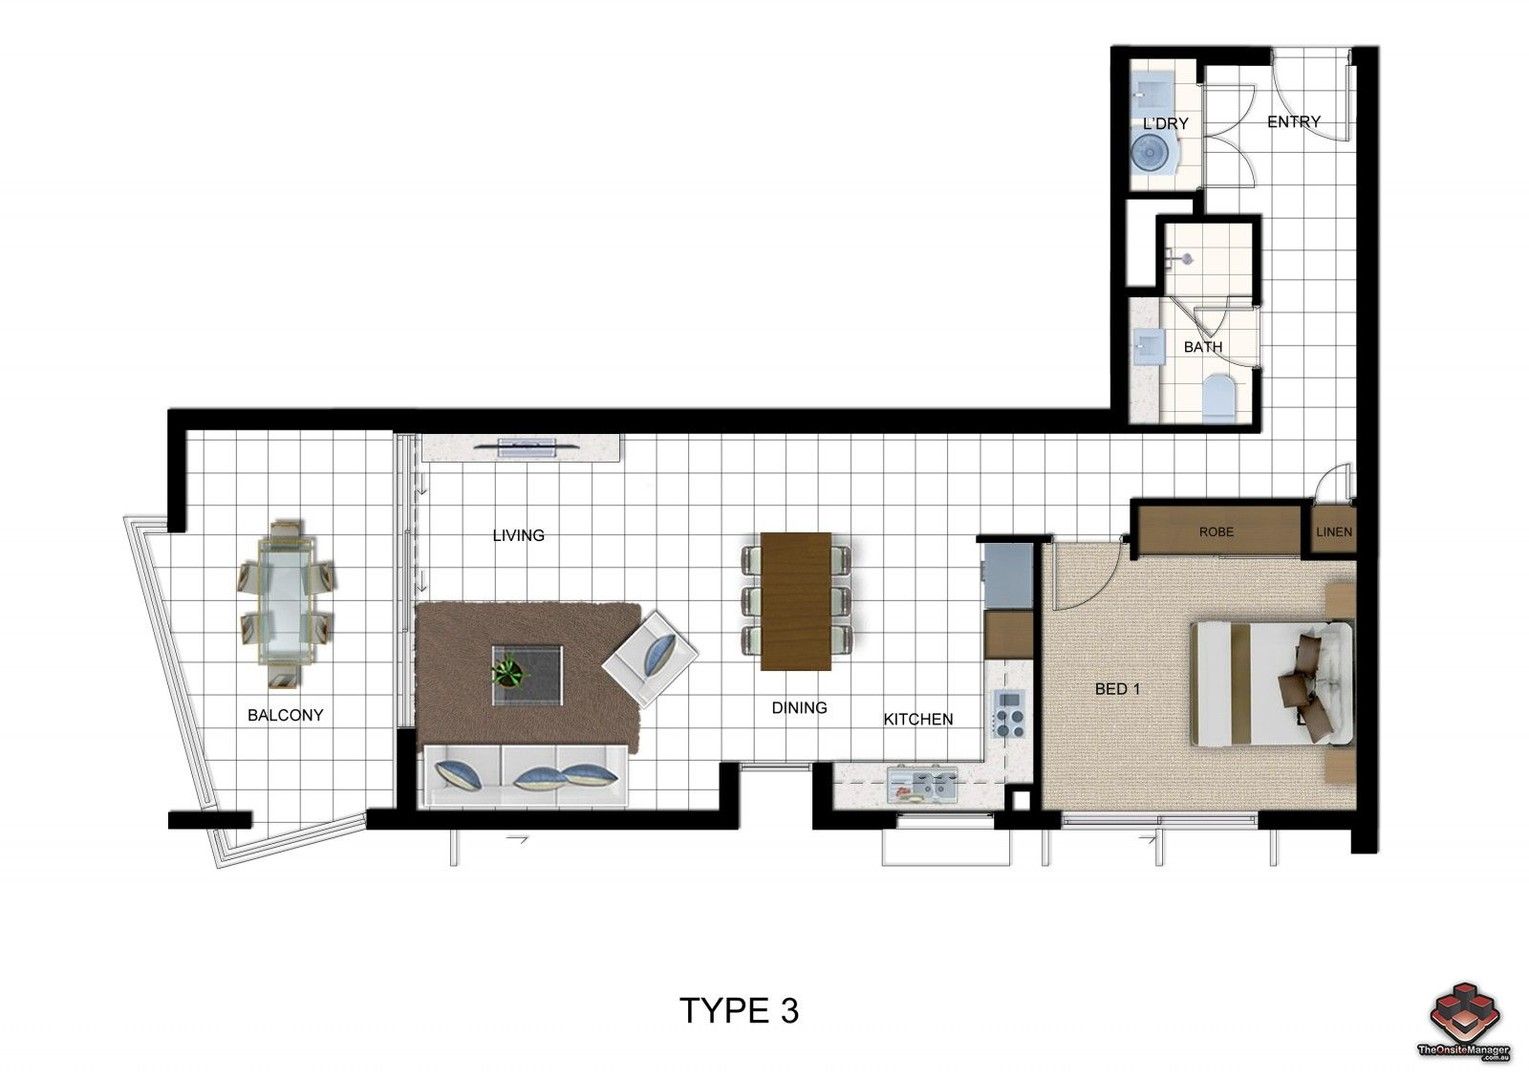 1 bedrooms Apartment / Unit / Flat in 104/70 Carl Street WOOLLOONGABBA QLD, 4102